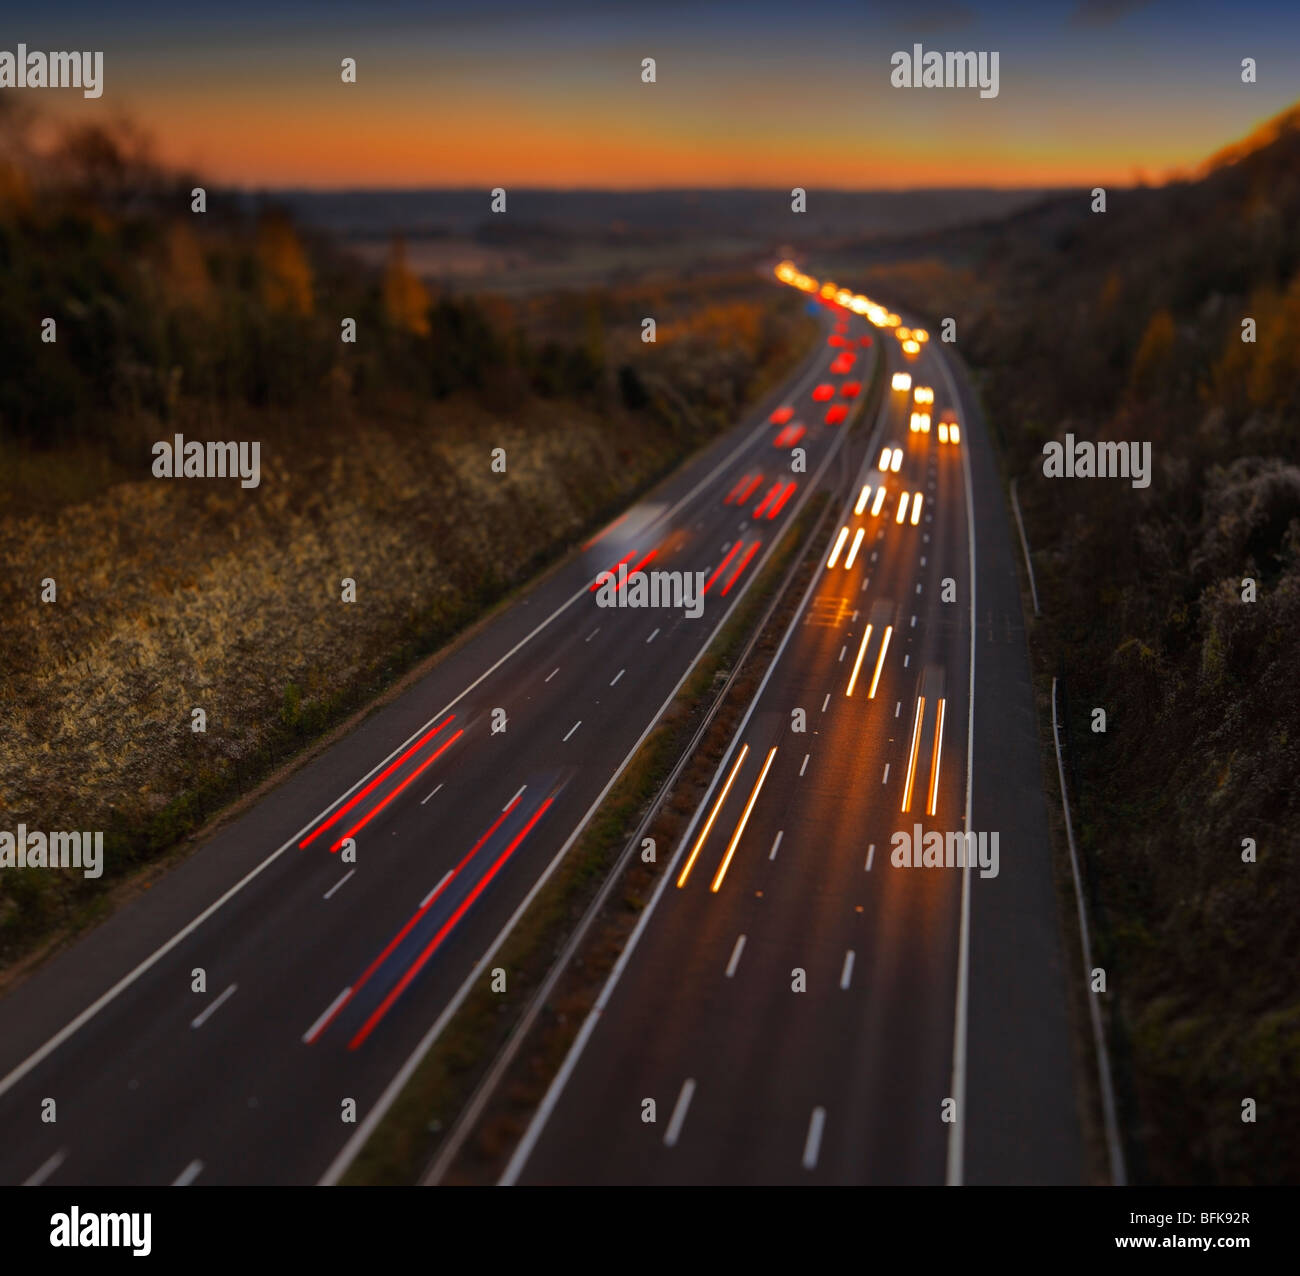 Autobahnverkehr M25, London. (Hinweis: Bild hat schmale Fokusebene) Stockfoto